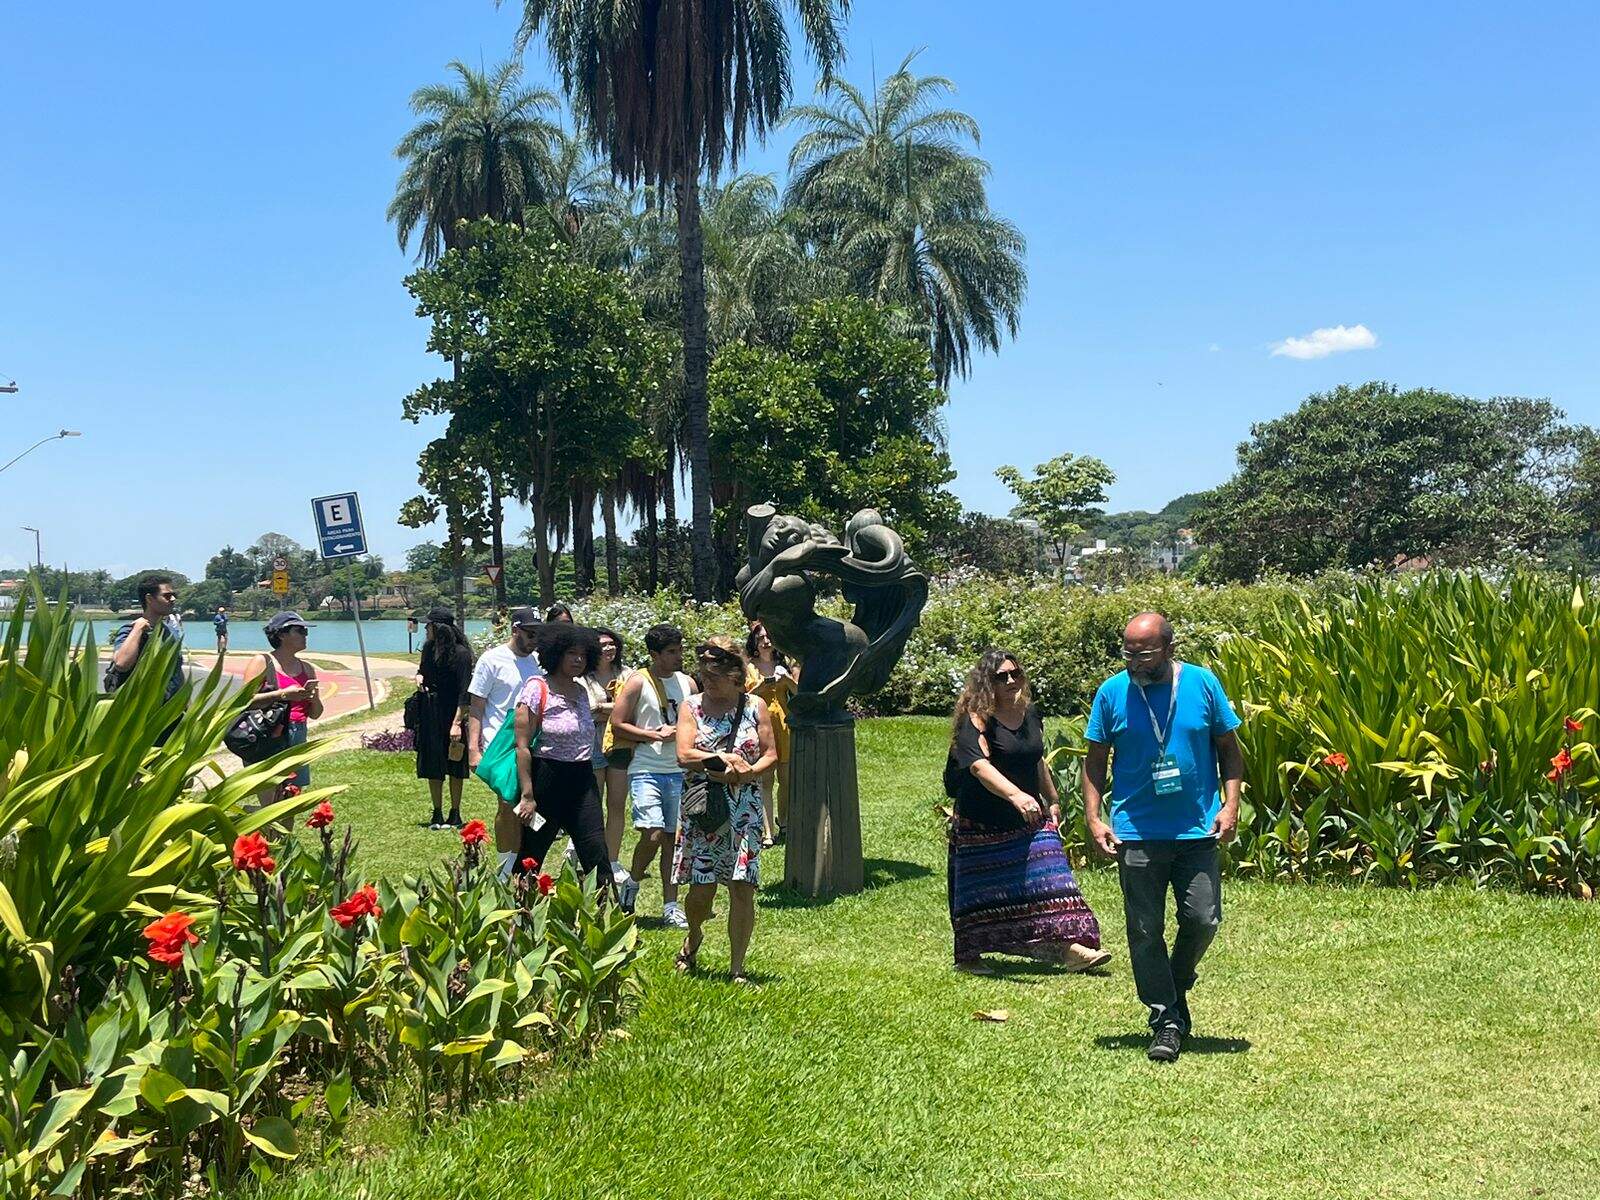 Grupo de pessoas caminha pelos jardins do Museu de Arte da Pampulha. O dia está ensolarado, a grama verde e o céu azul. Há coqueiros ao fundo